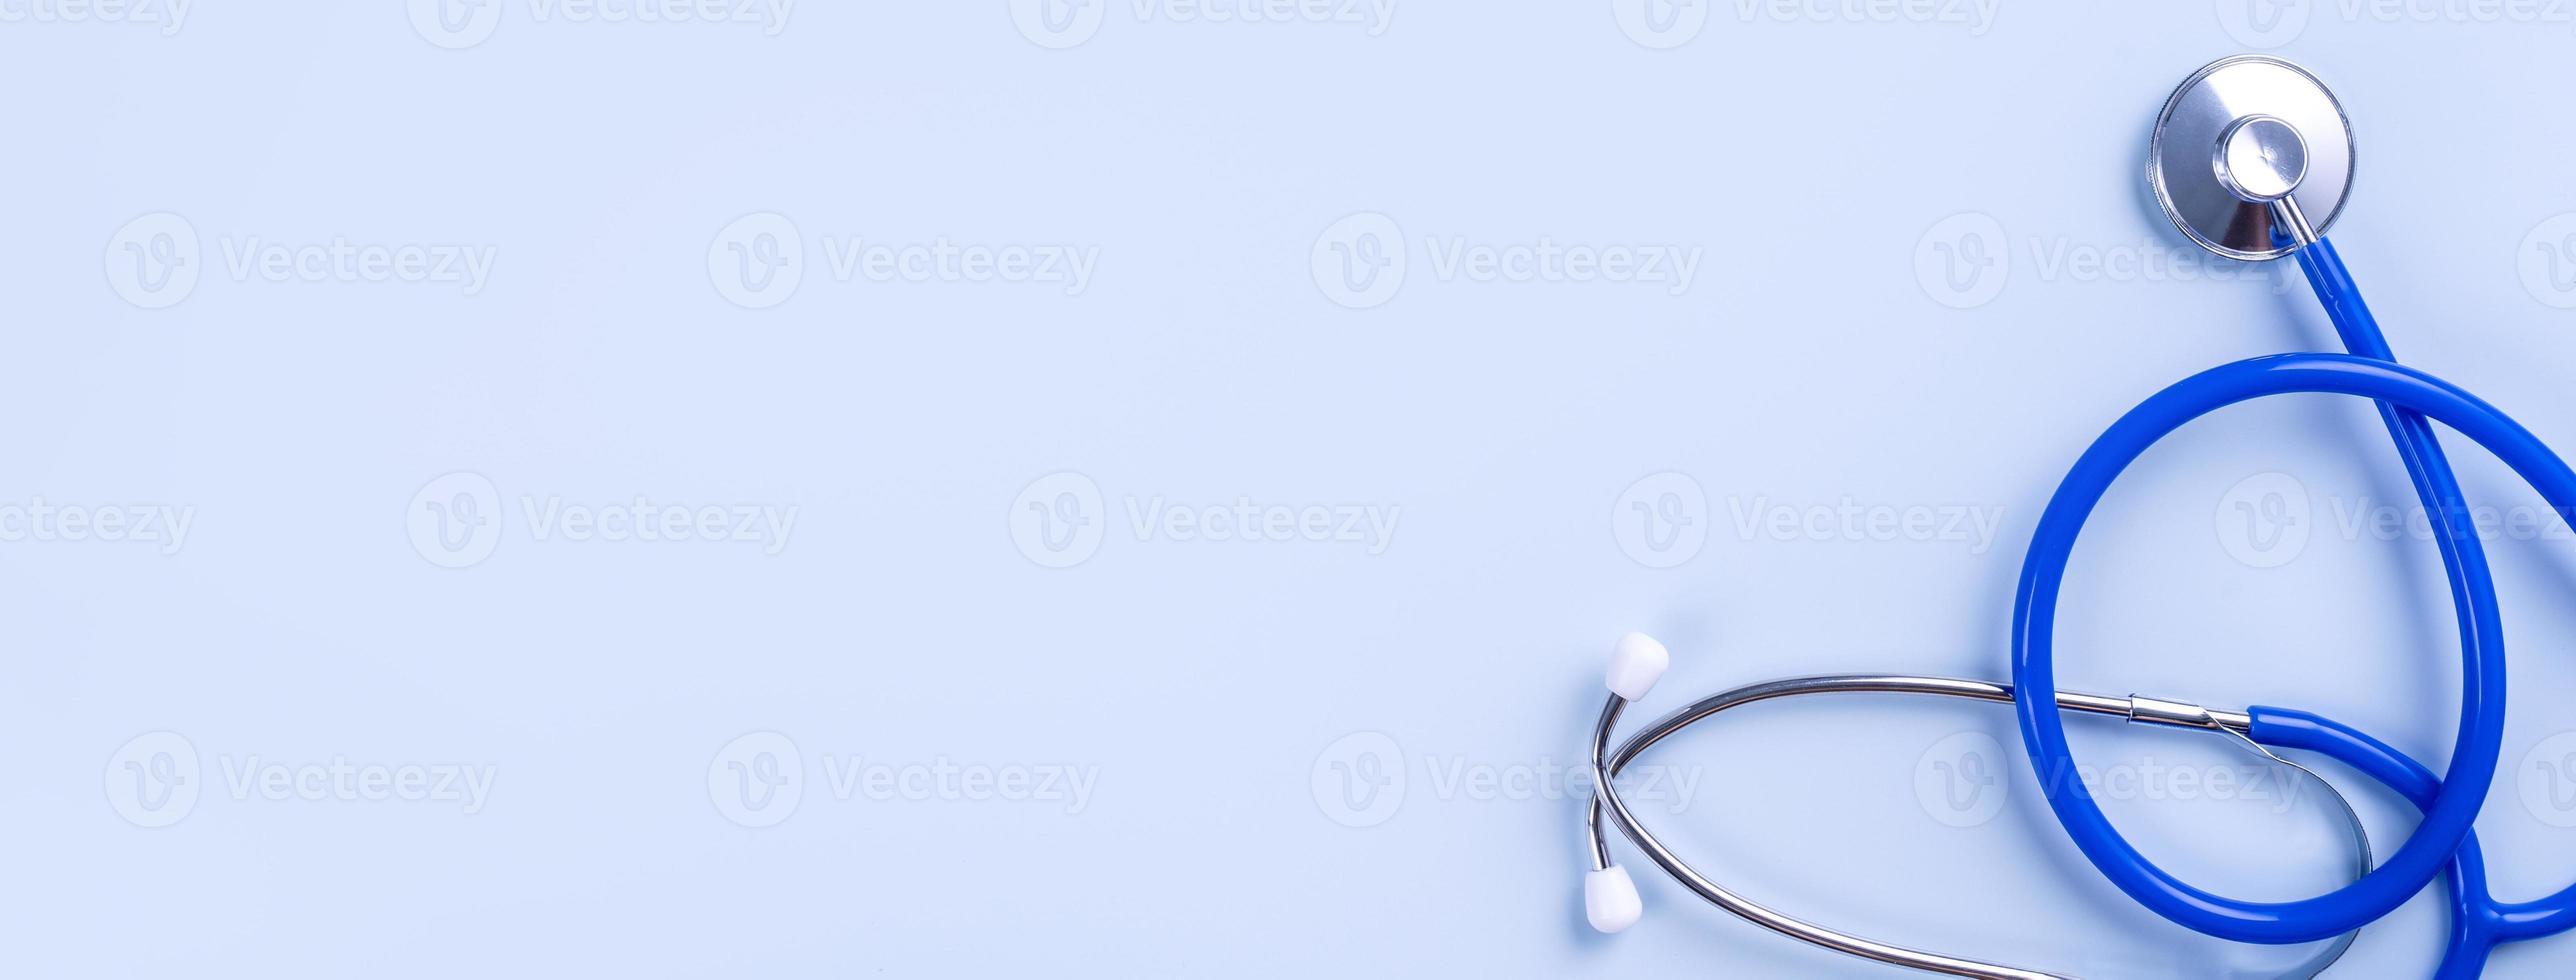 máscara azul - equipamento médico com estetoscópio, conceito de infecção e prevenção pandêmica de doenças mundiais, vista superior, configuração plana, design aéreo foto